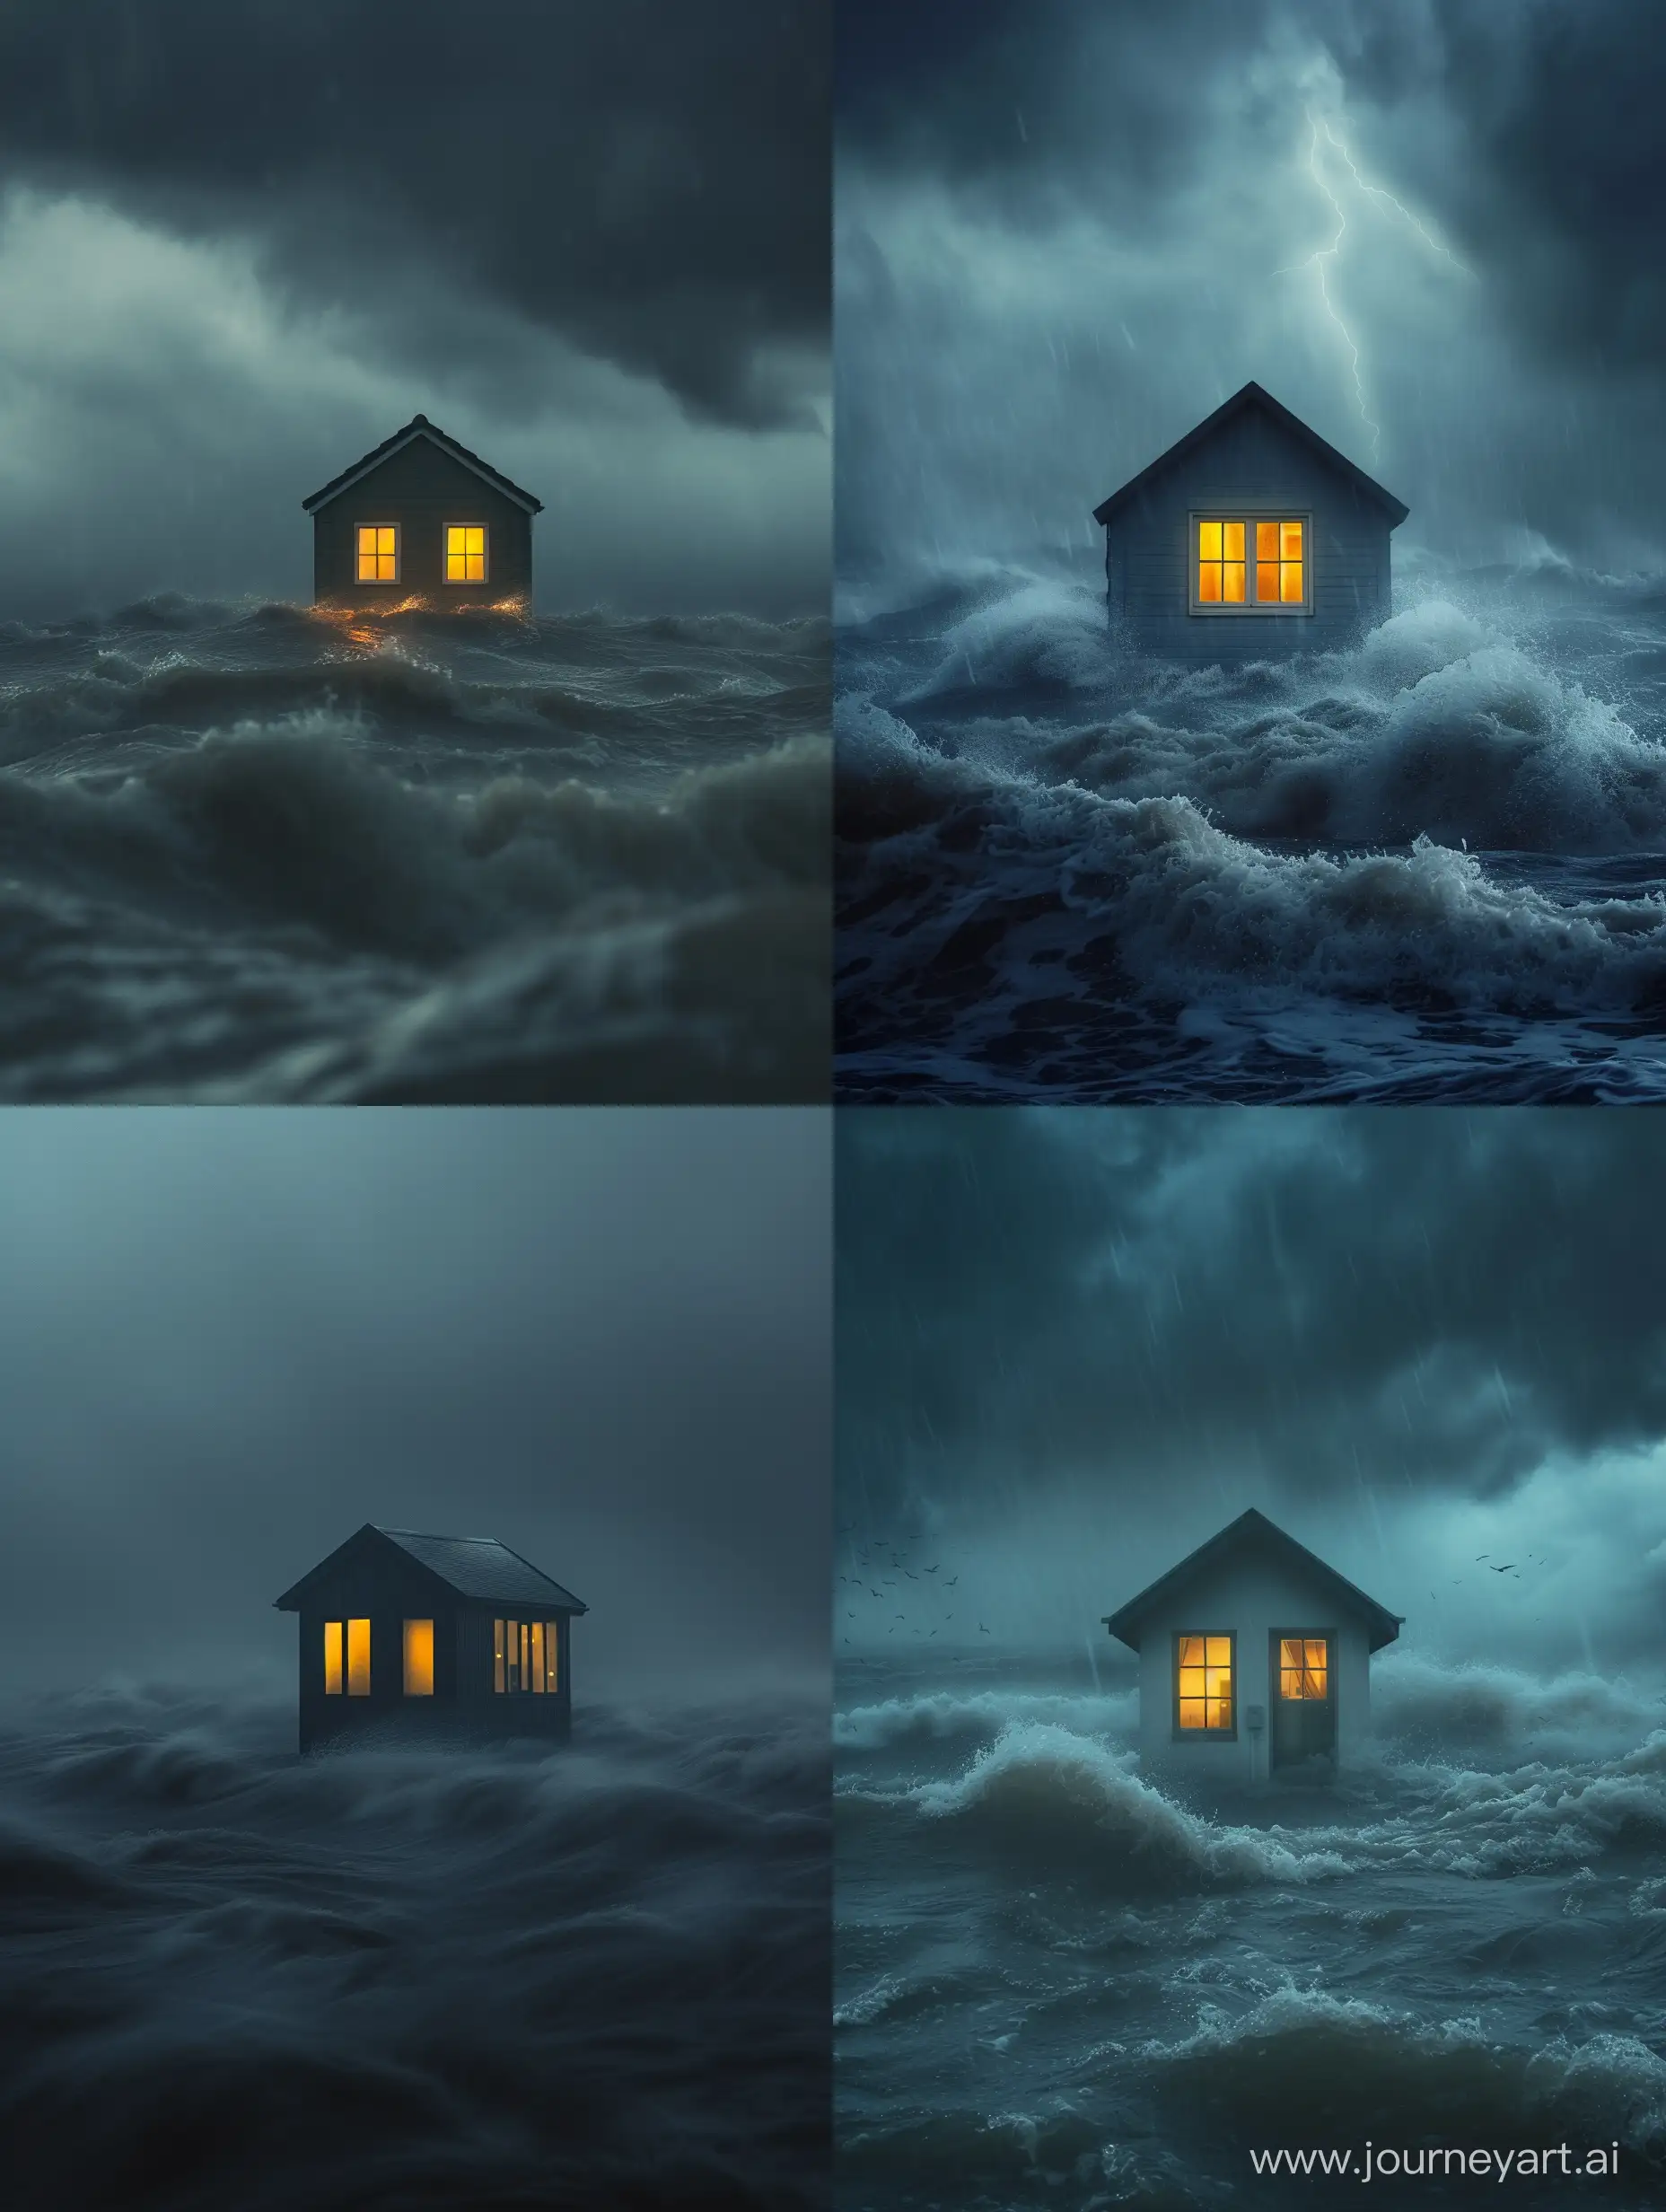 Isolated-DoubleGlazed-House-Amidst-Storm-with-Warm-Illumination